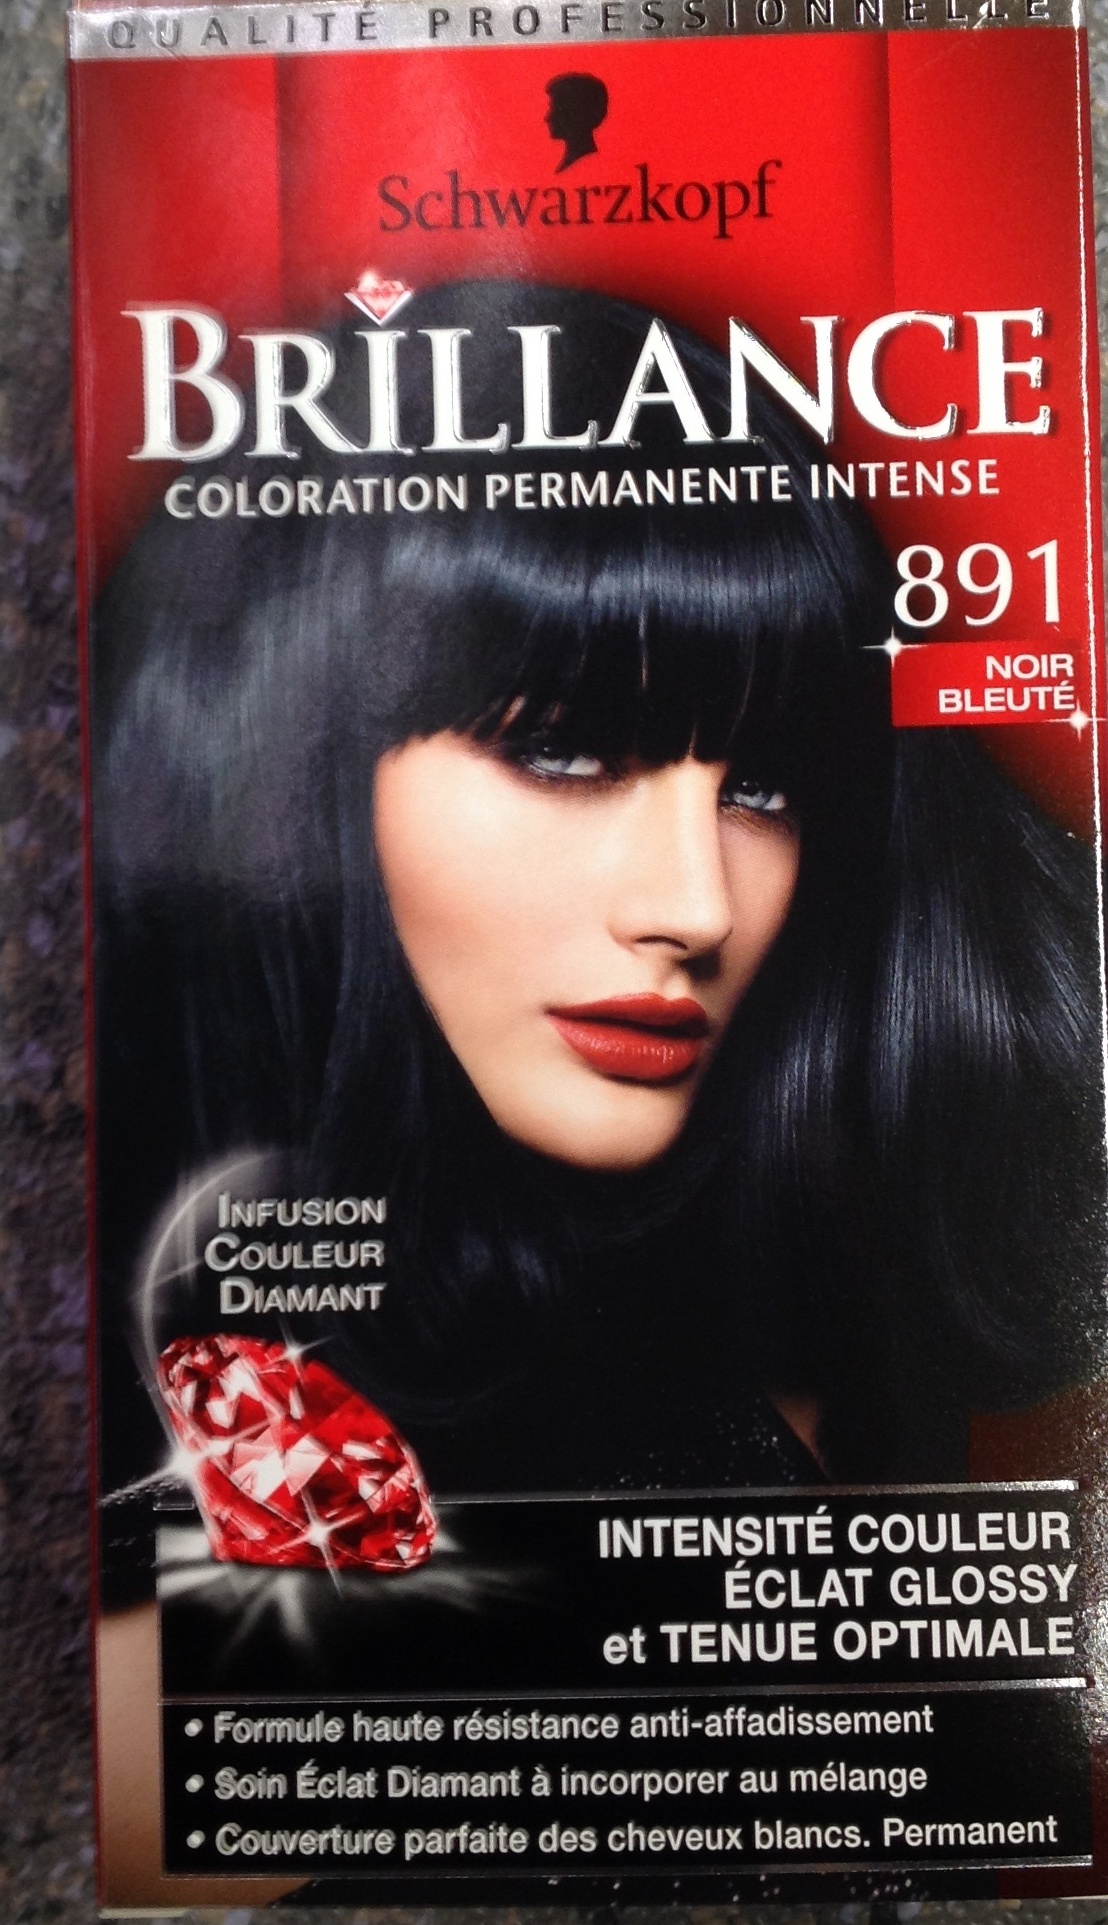 Brillance coloration permanente intense 891 Noir bleuté - Product - fr